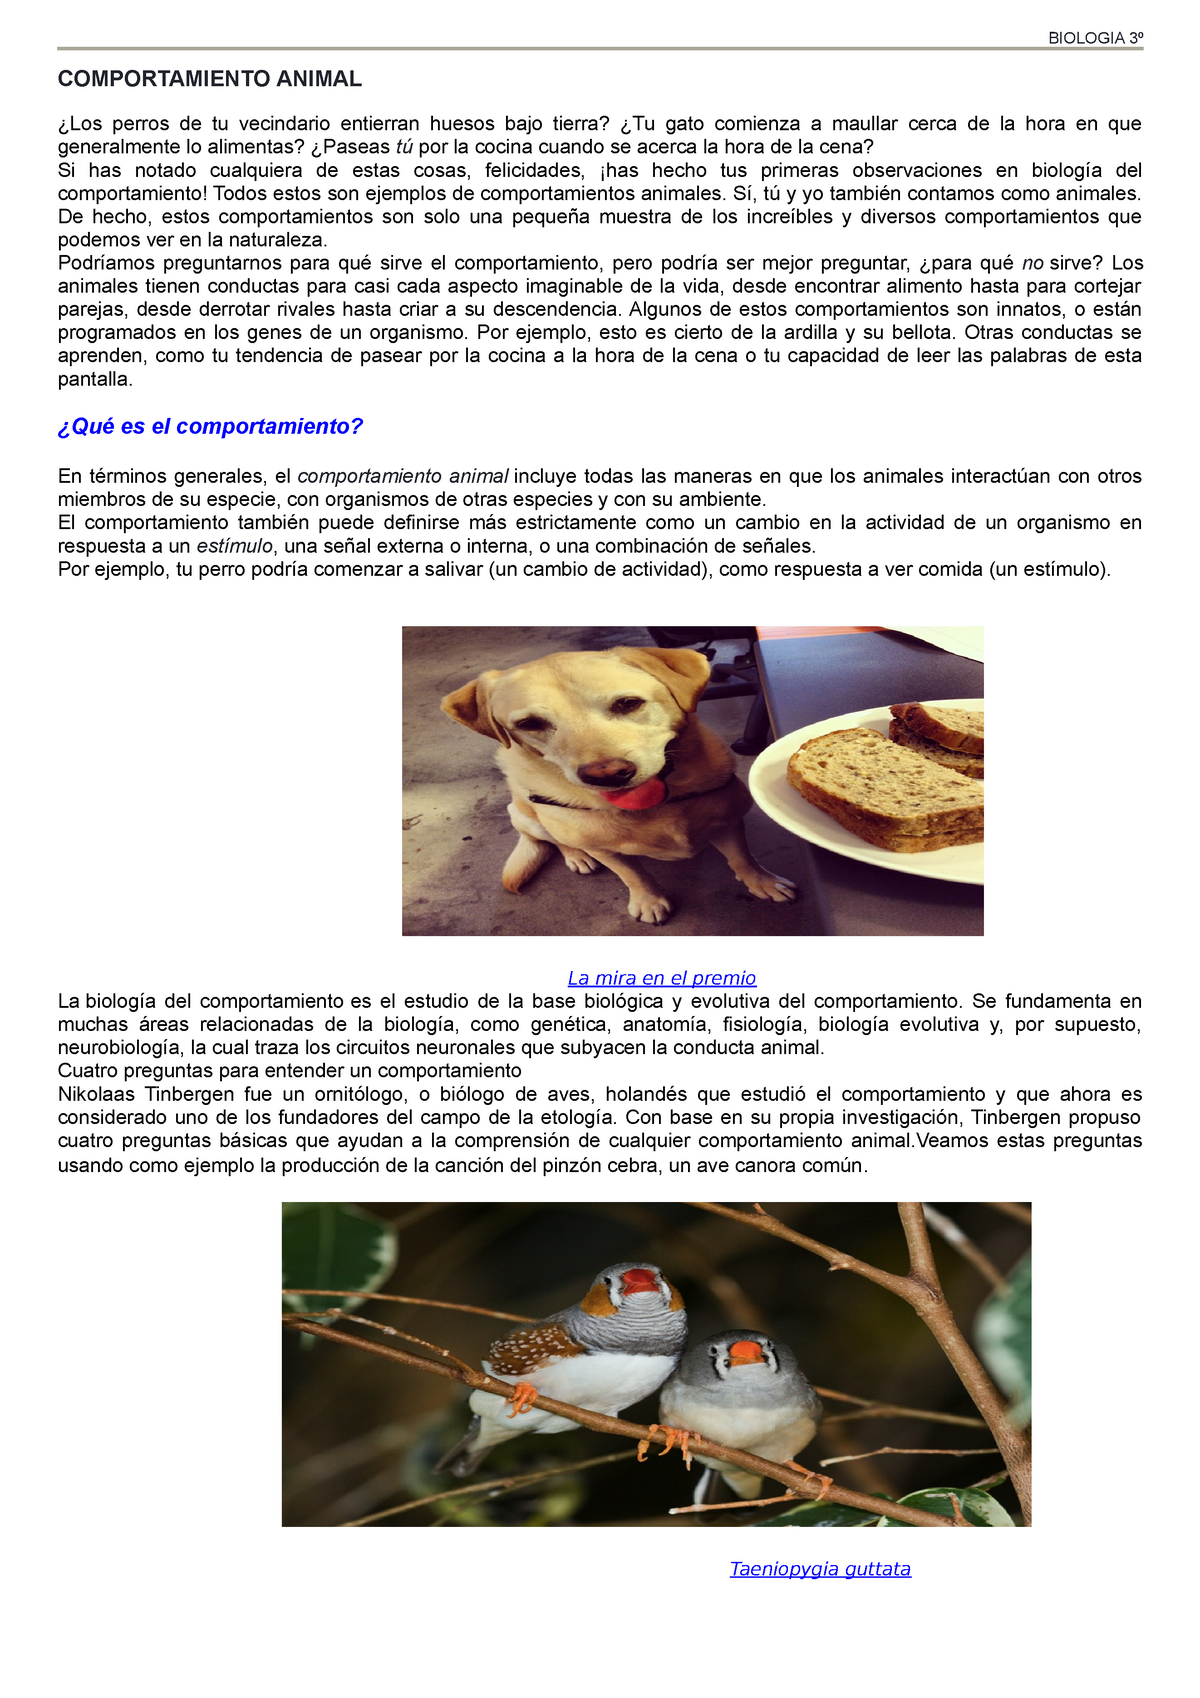 Comportamiento animal 1 - COMPORTAMIENTO ANIMAL ¿Los perros de tu  vecindario entierran huesos bajo - Studocu